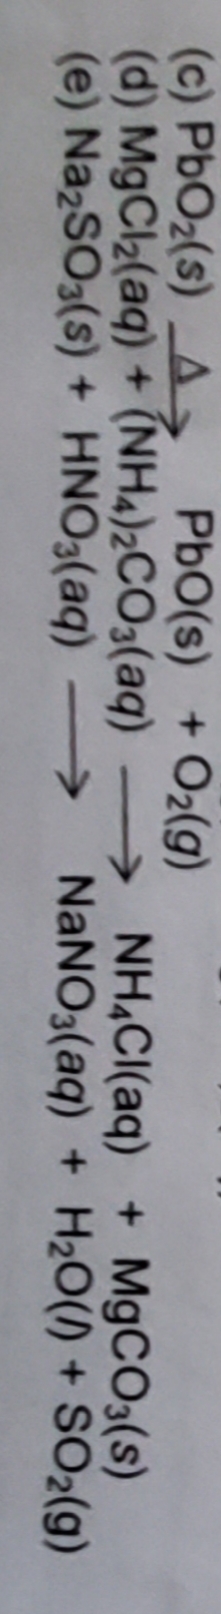 O2(g)
PbO(s) +
(d) MgCl2(aq)+ (NH4)2CO3(aq)
(e) Na2SO3(s)+HNO3(aq) >
(c) PbO2(s) A
NH&CI(aq)
NaNO3(aq)
MgCO3(s)
H2O()+ SO2(g)
+
